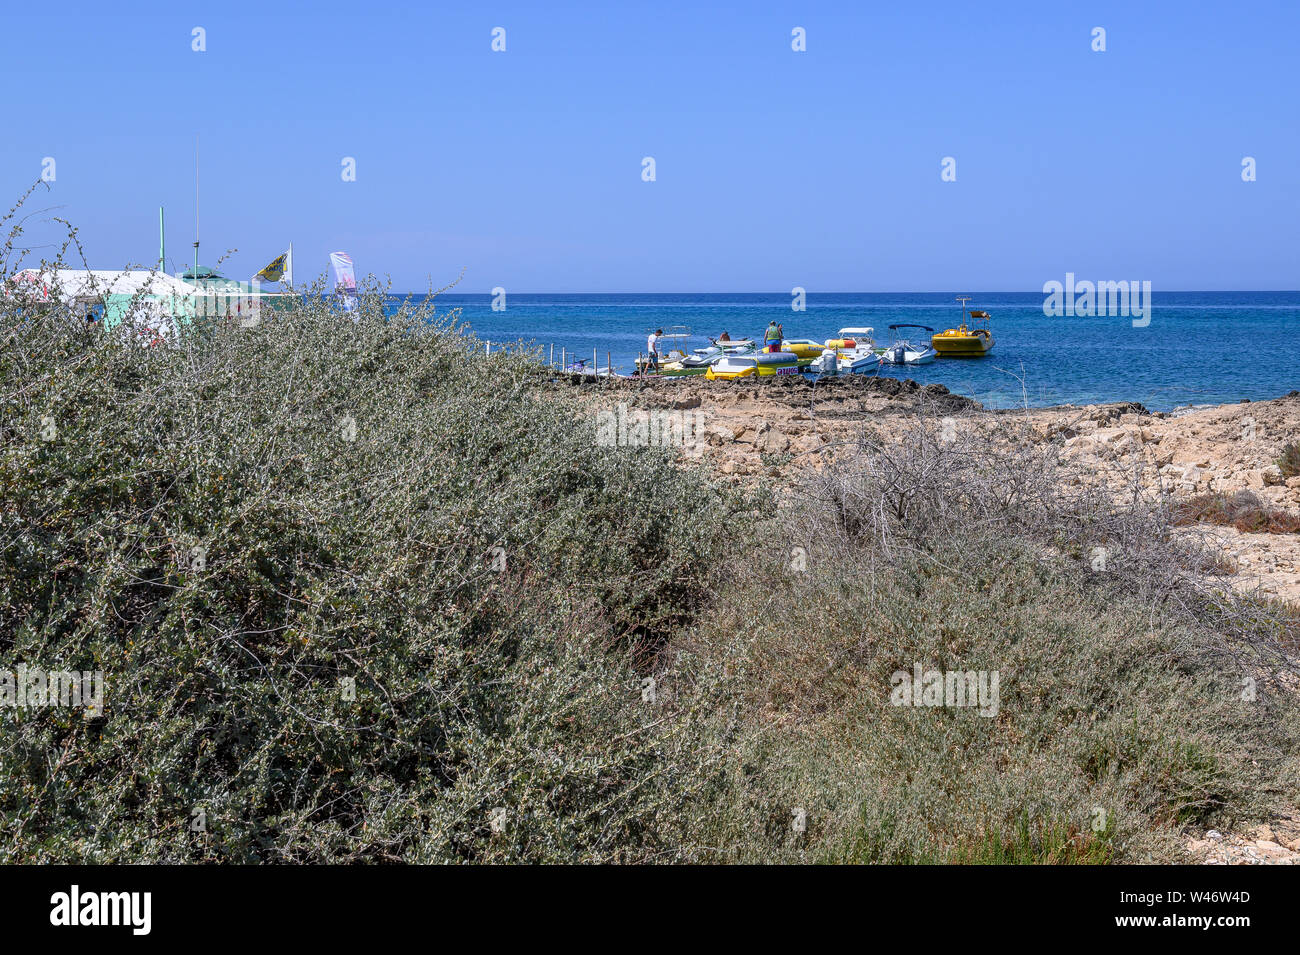 Bateaux sur la mer dans la région de Sunrise Beach, Protaras, Chypre Banque D'Images